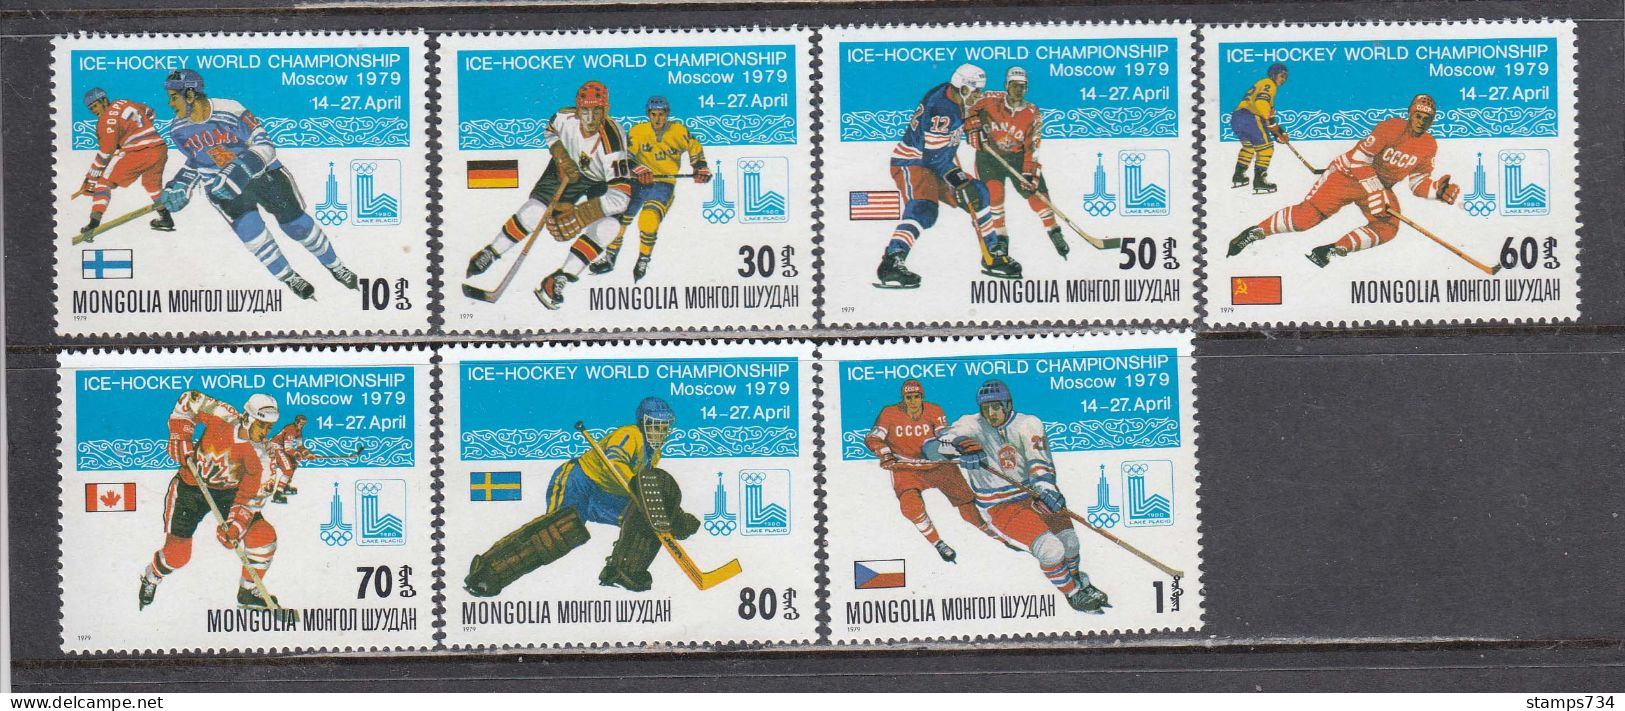 Mongolia 1979 - Ice Hockey World Championship, Moscow, Mi-Nr. 1215/21, MNH** - Mongolei